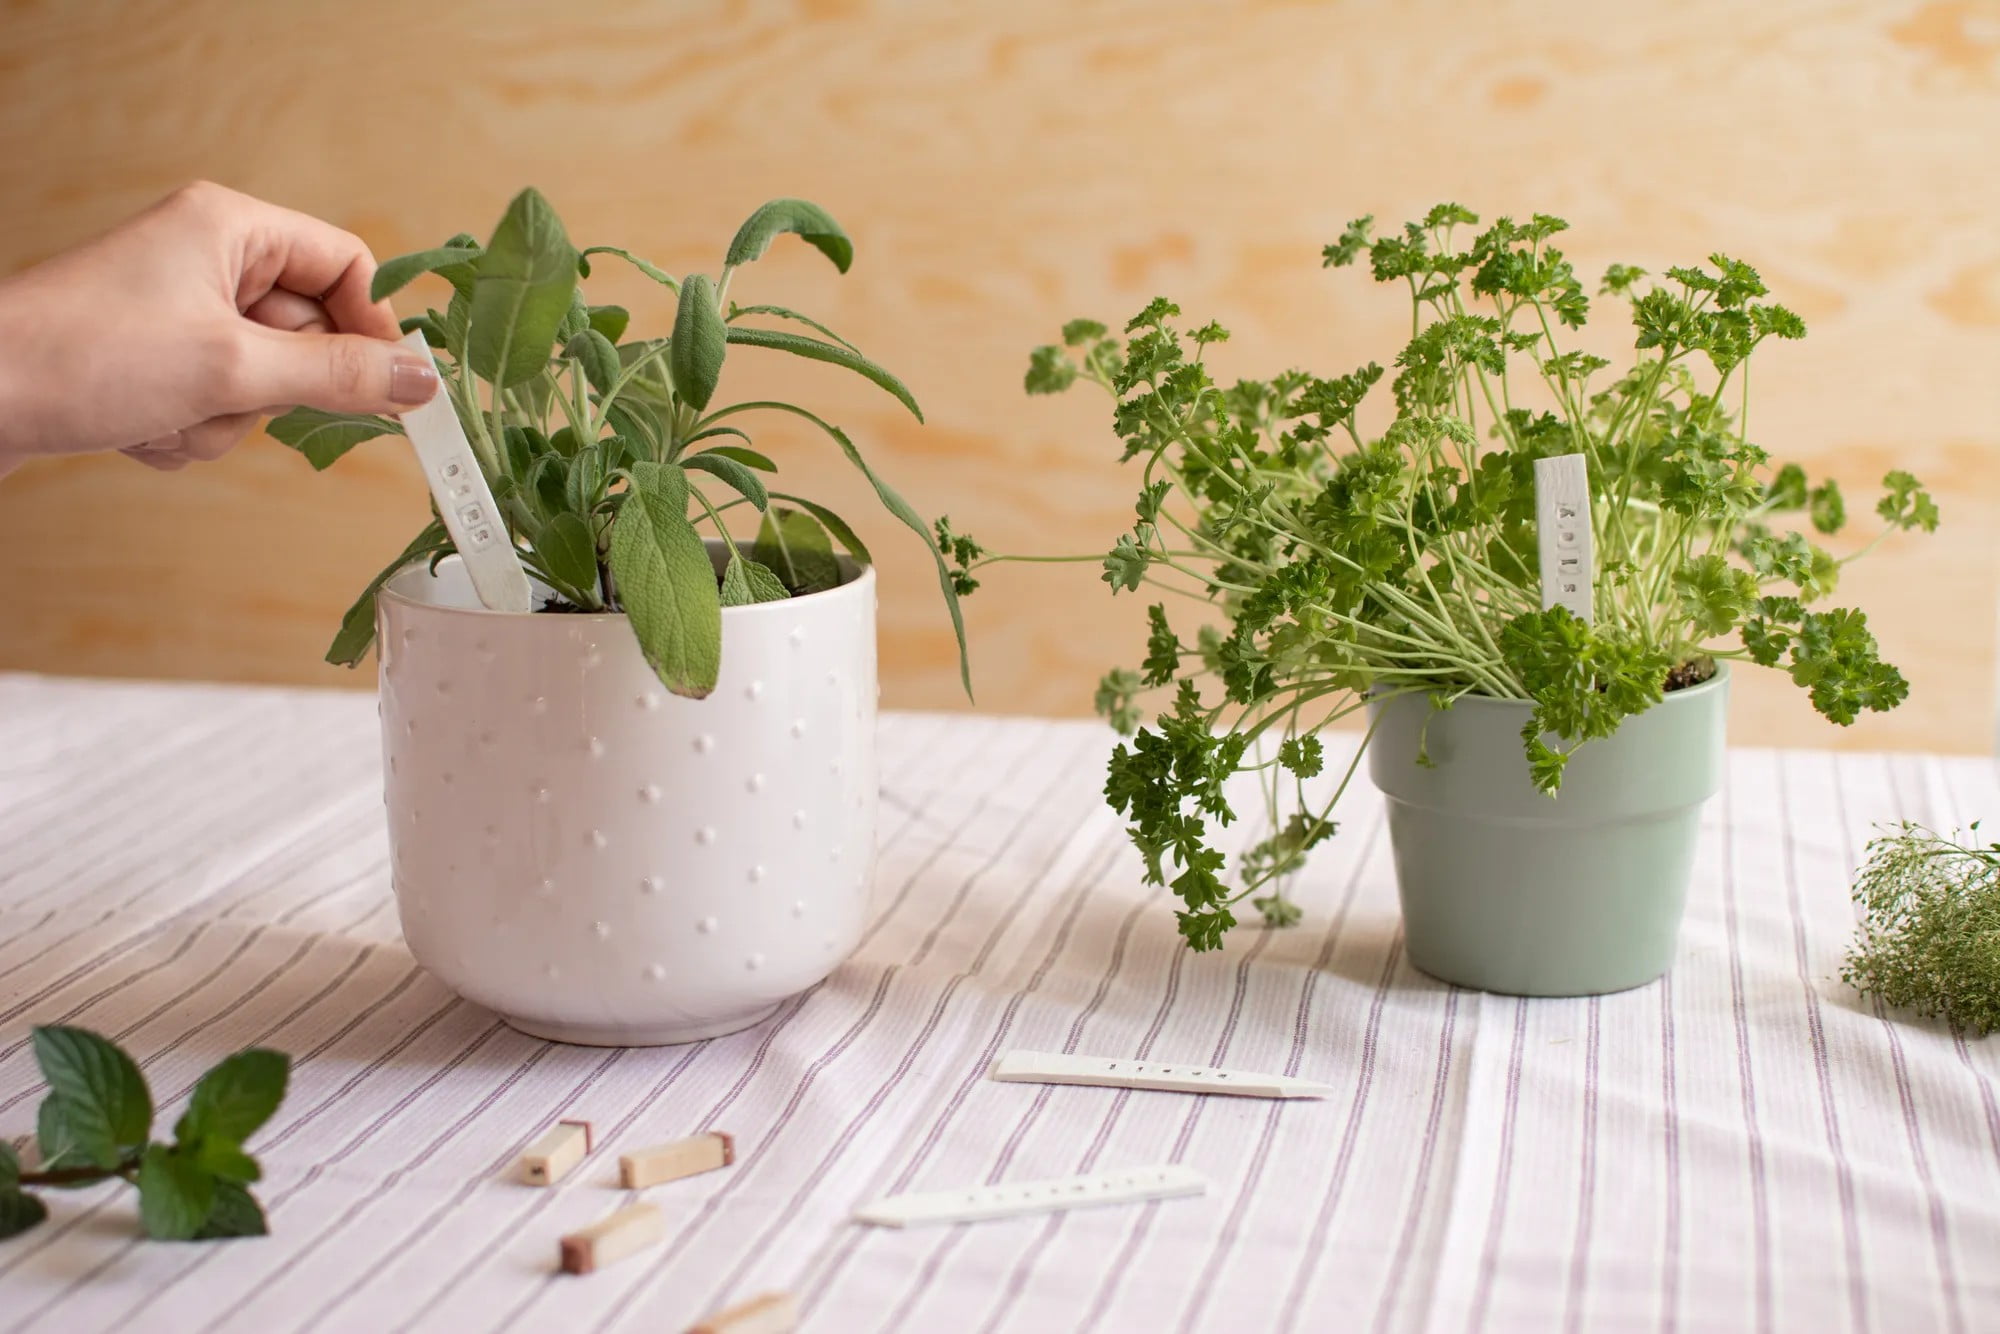 Nabavite praktične naljepnice s biljem kako biste znali koja je biljka! Možete ih napraviti čak i od samostvrdnjavajućeg materijala.